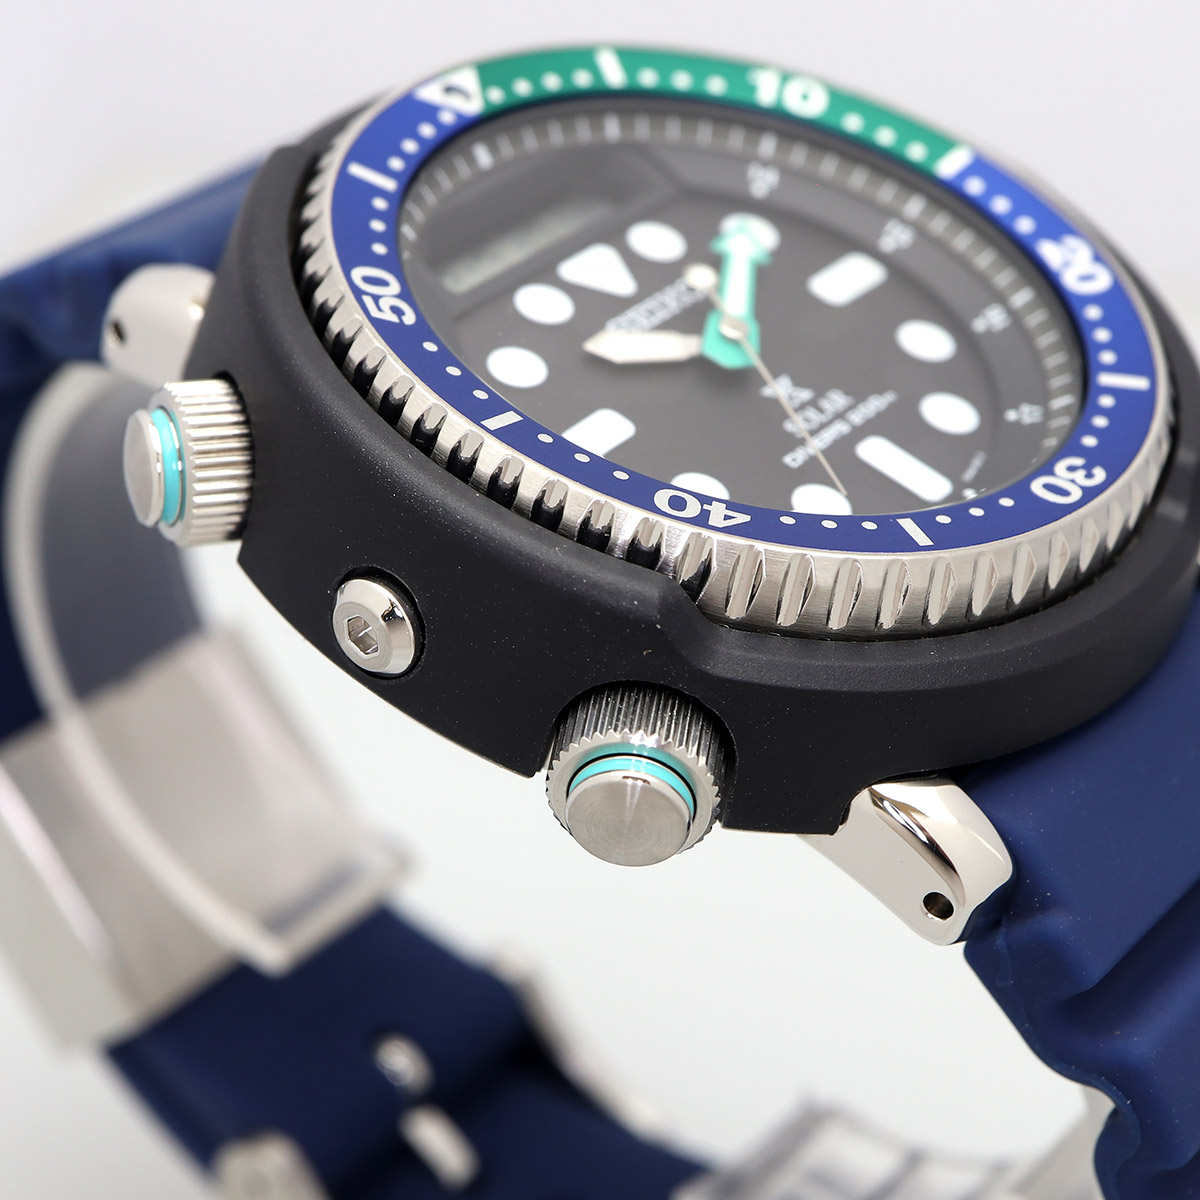 SEIKO セイコー 腕時計 メンズ 海外モデル PROSPEX プロスペックス ソーラー アナログ デジタル ダイバーズ SNJ039P1